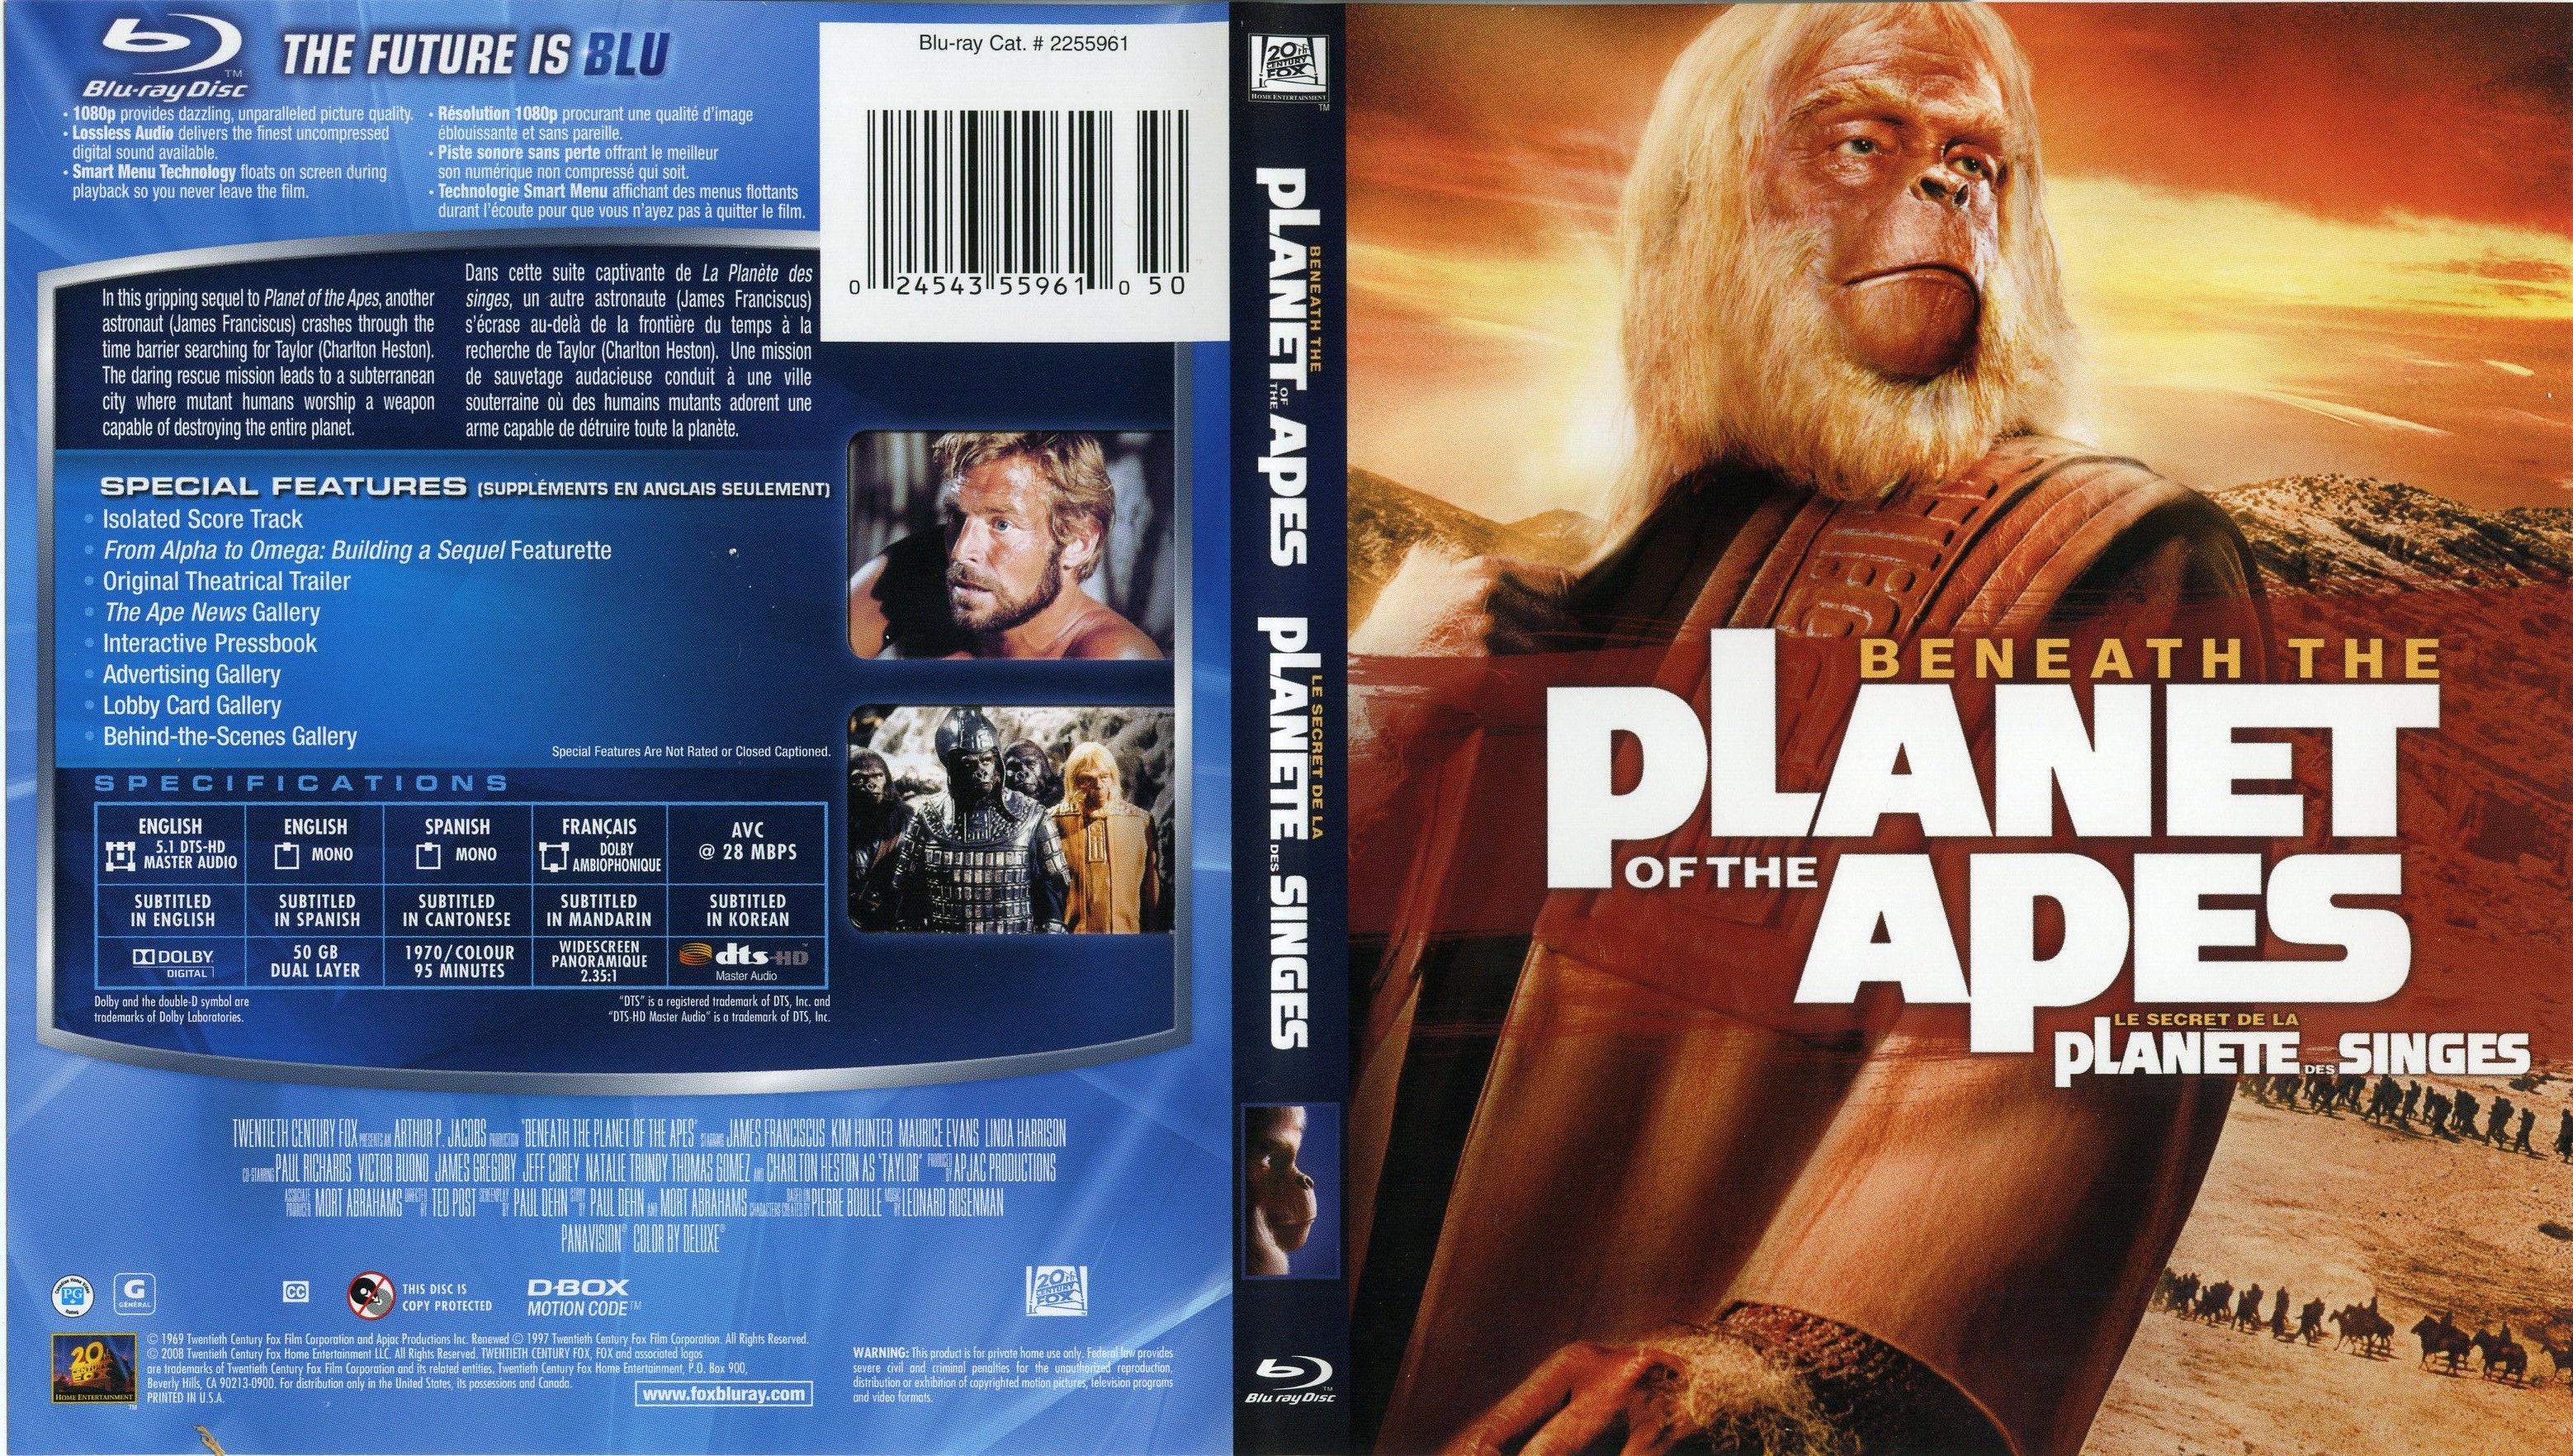 Jaquette DVD Beneath the planet of the apes - Le secret de la plante des singes (Canadienne) (BLU-RAY)